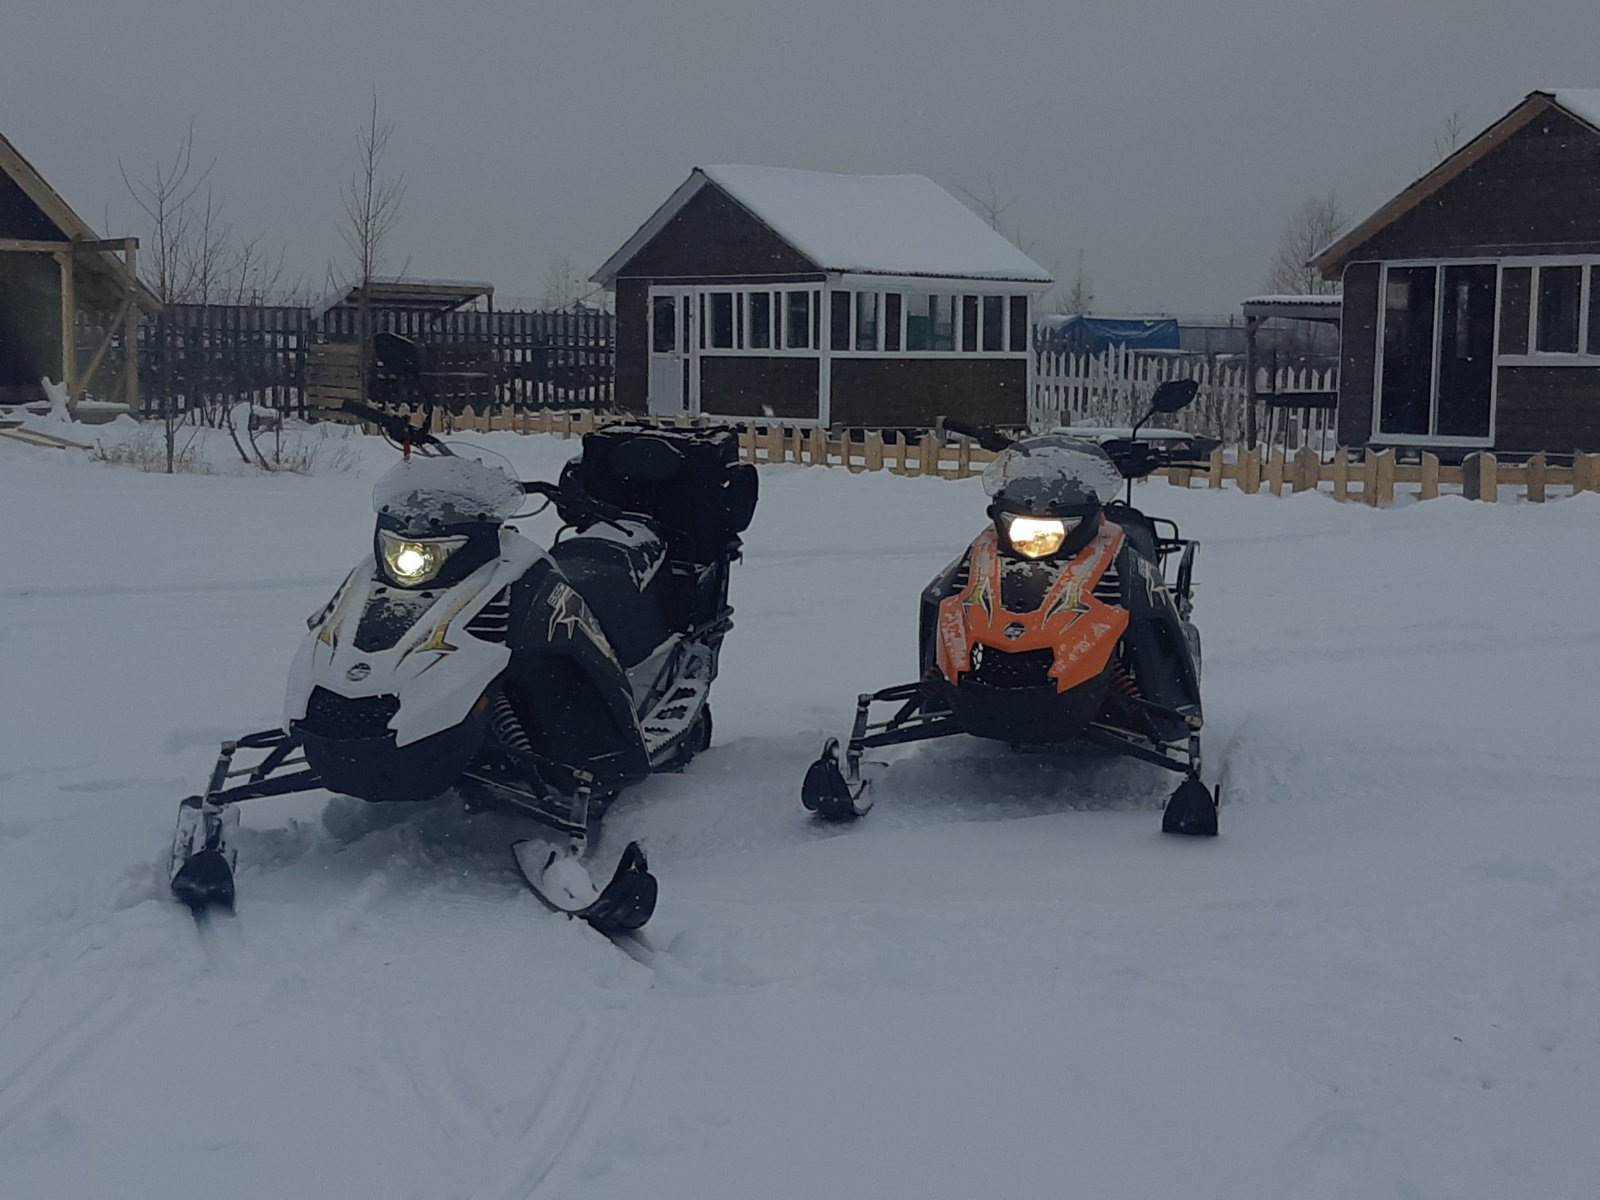 Безопасное катание на снегоходе по зимней трассе. Фото двух людей в зимней спецодежде и снегоходном шлеме во время езды на снегоходе